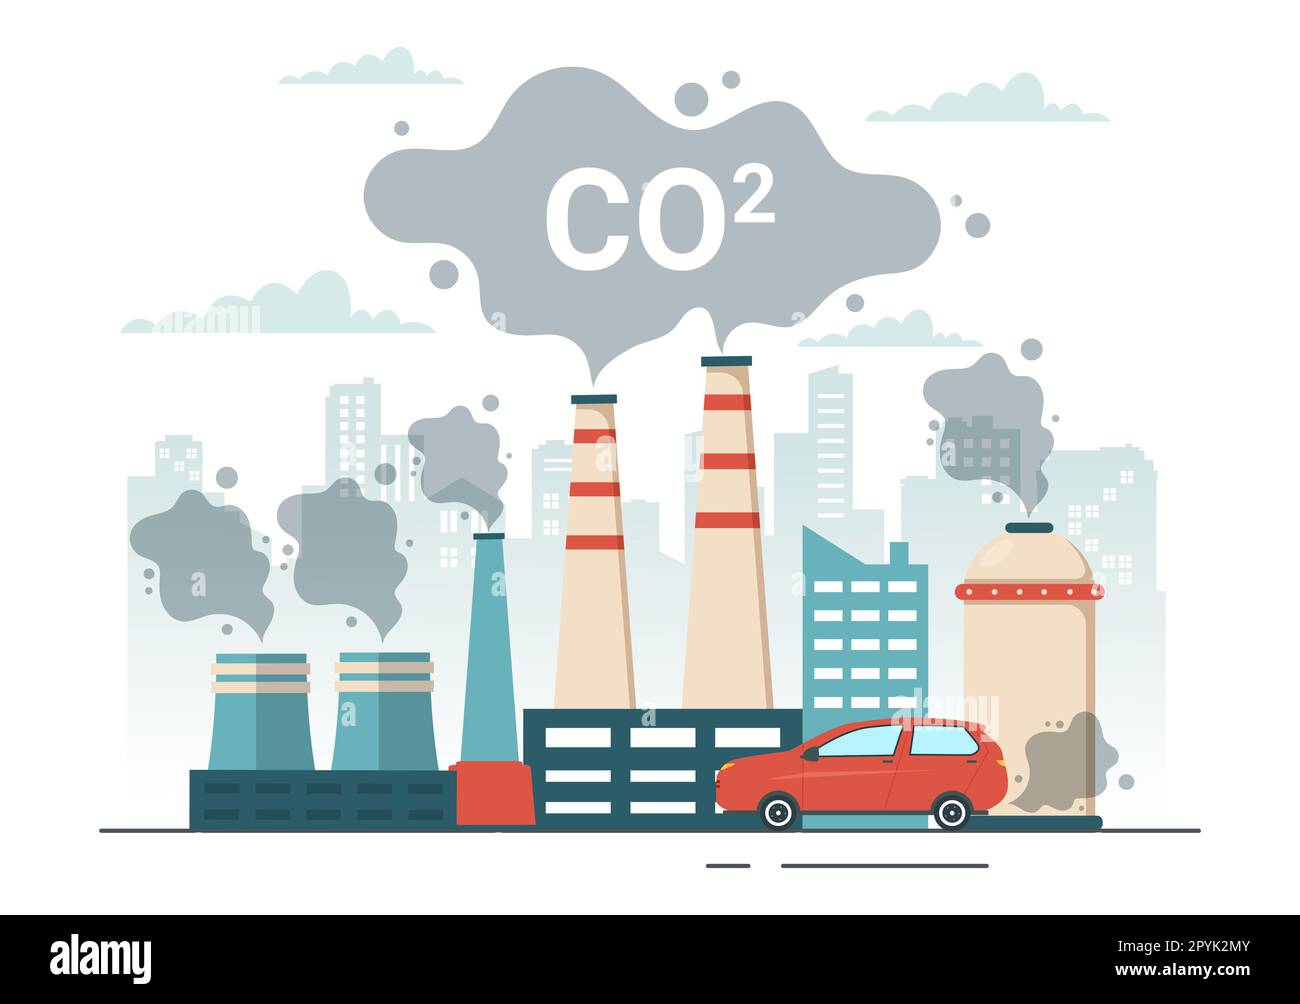 Dioxyde de carbone ou illustration de CO2 pour sauver la planète Terre du changement climatique en raison de la pollution des usines et des véhicules dans des modèles dessinés à la main Banque D'Images